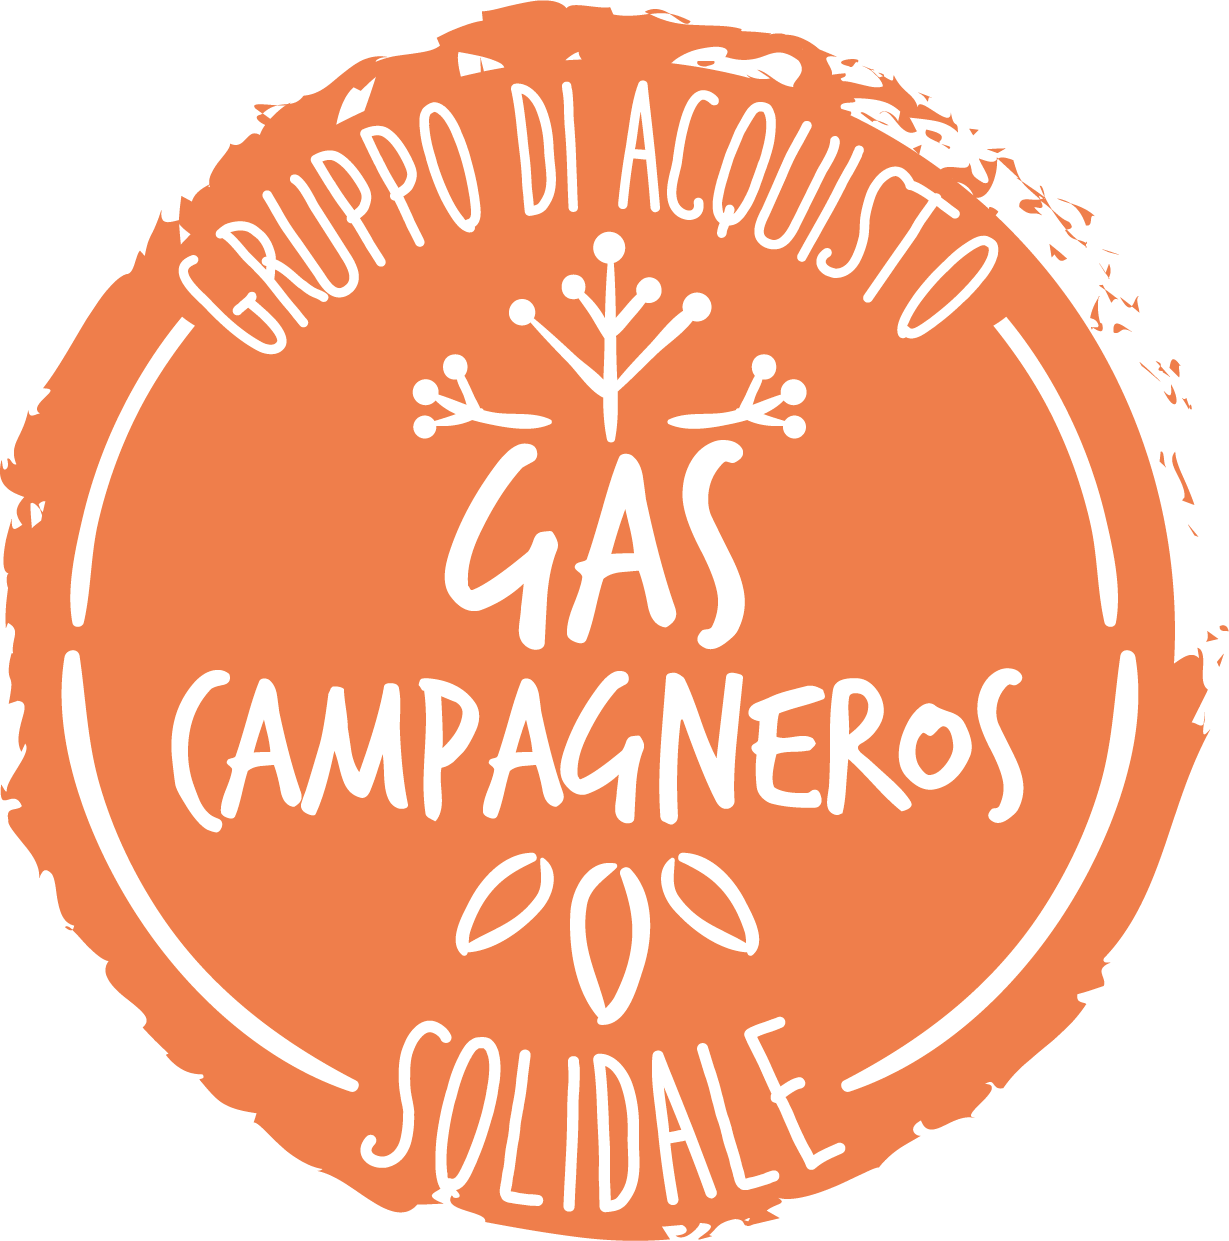 Gas Campagneros